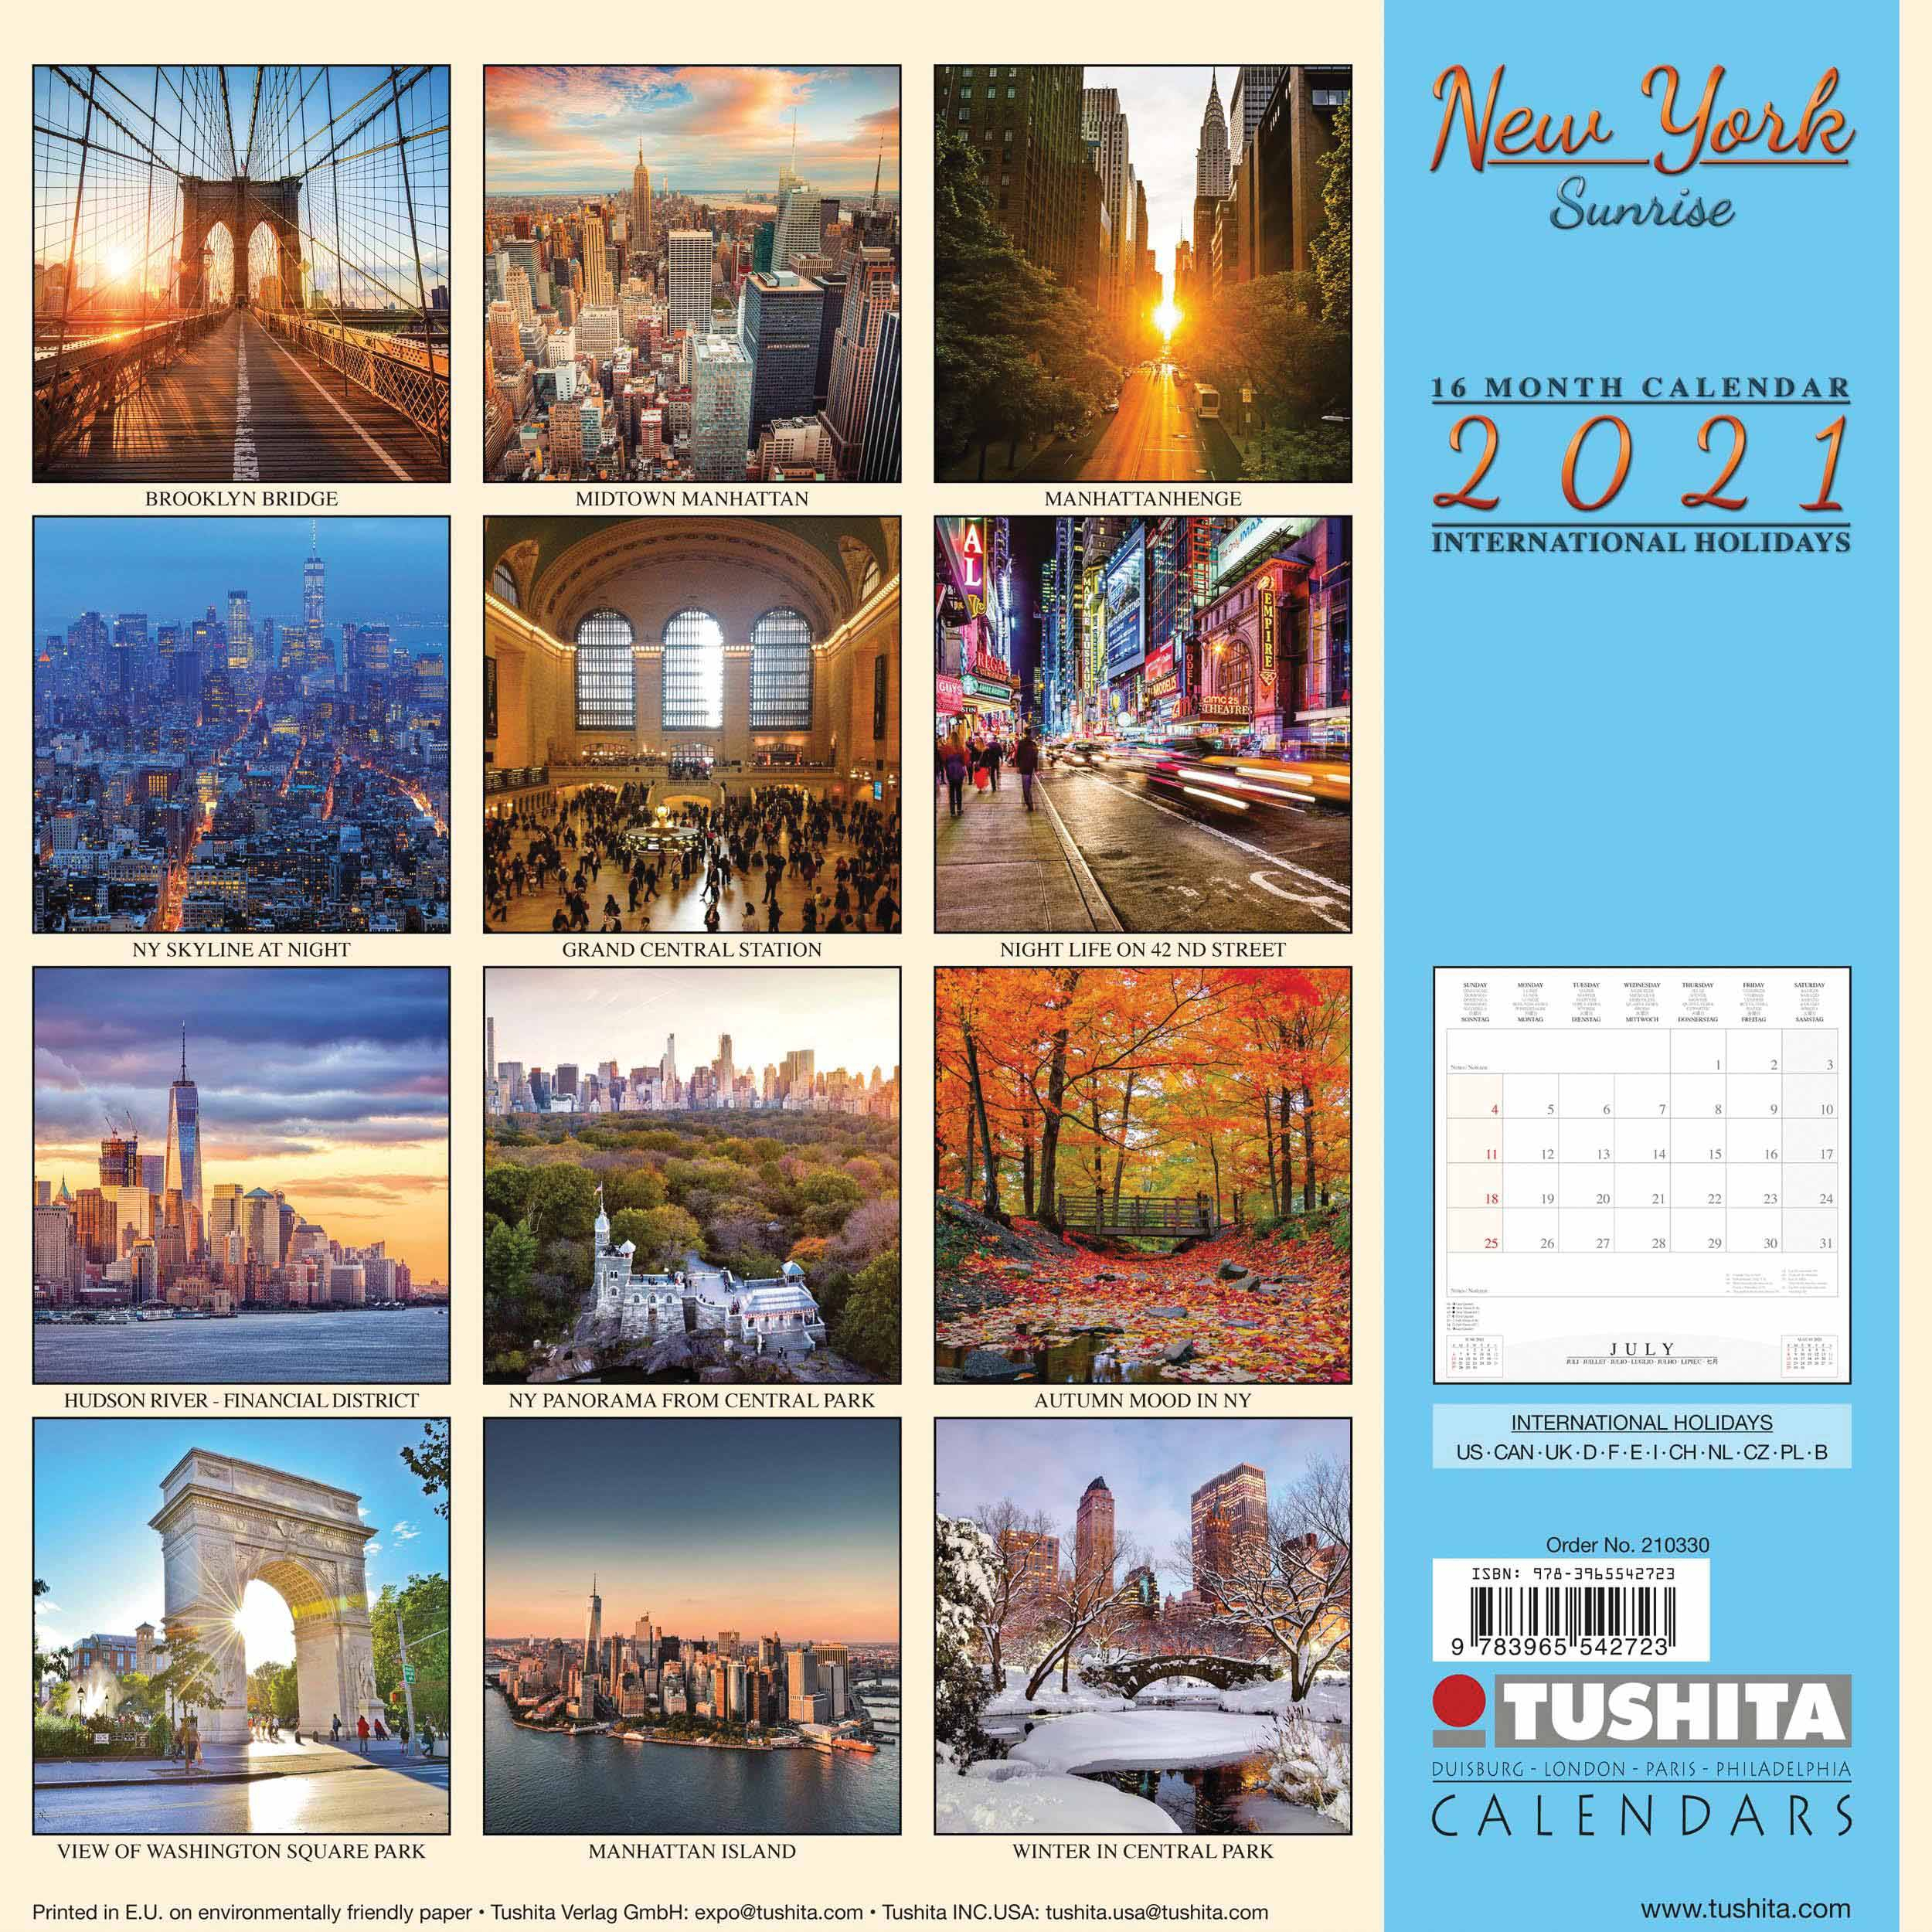 new york sunrise calendar 2021 at calendar club